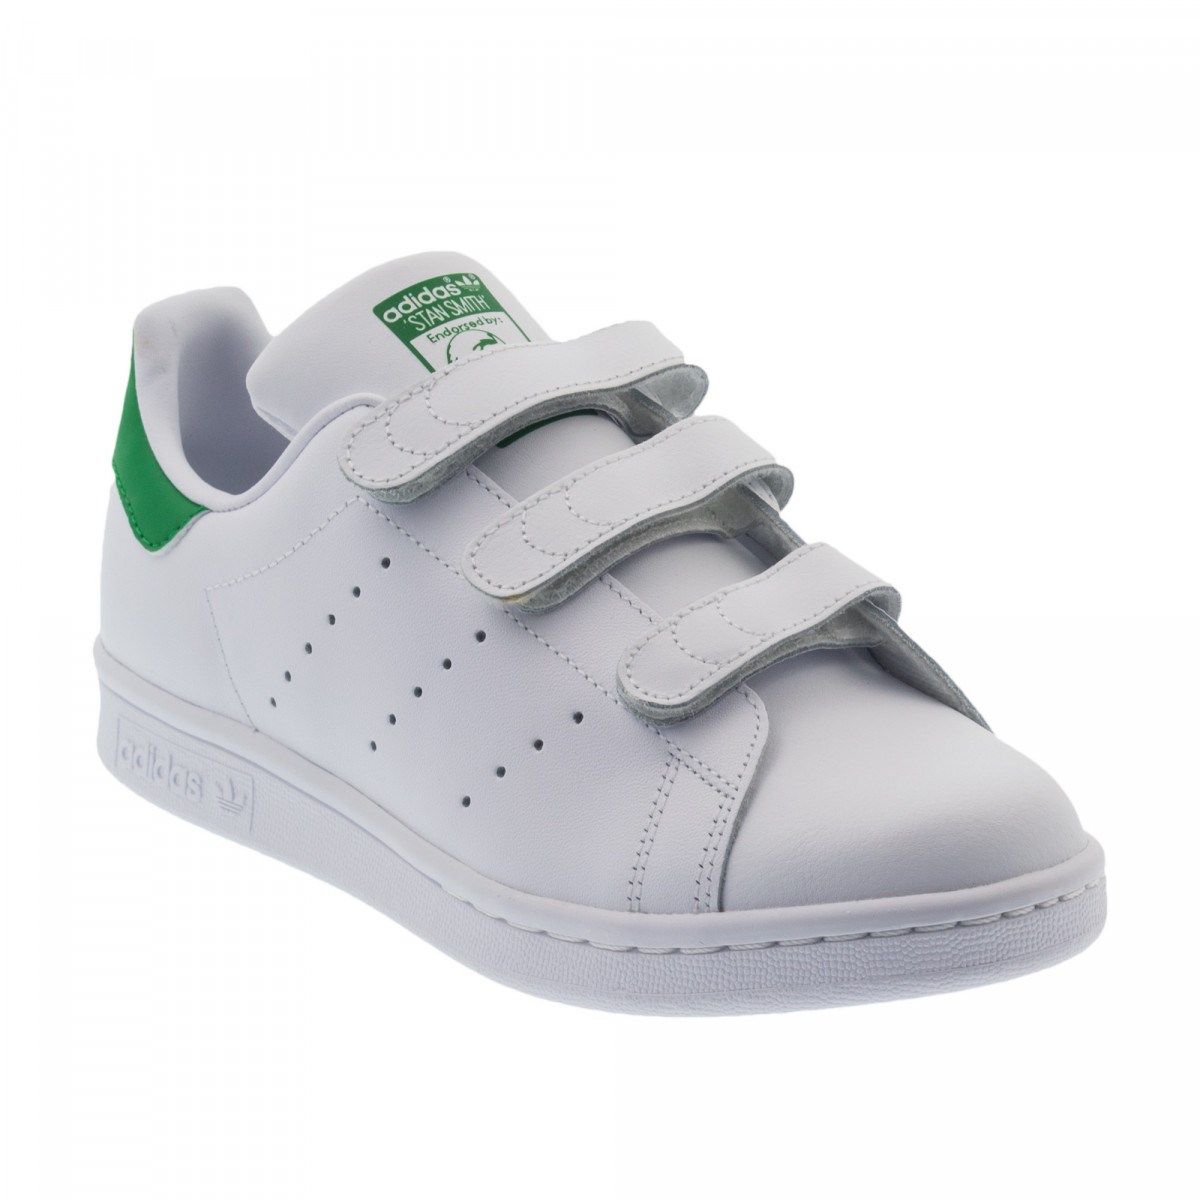 Adidas Stan Smith Çırtlı Beyaz Bayan Spor Ayakkabı S82702